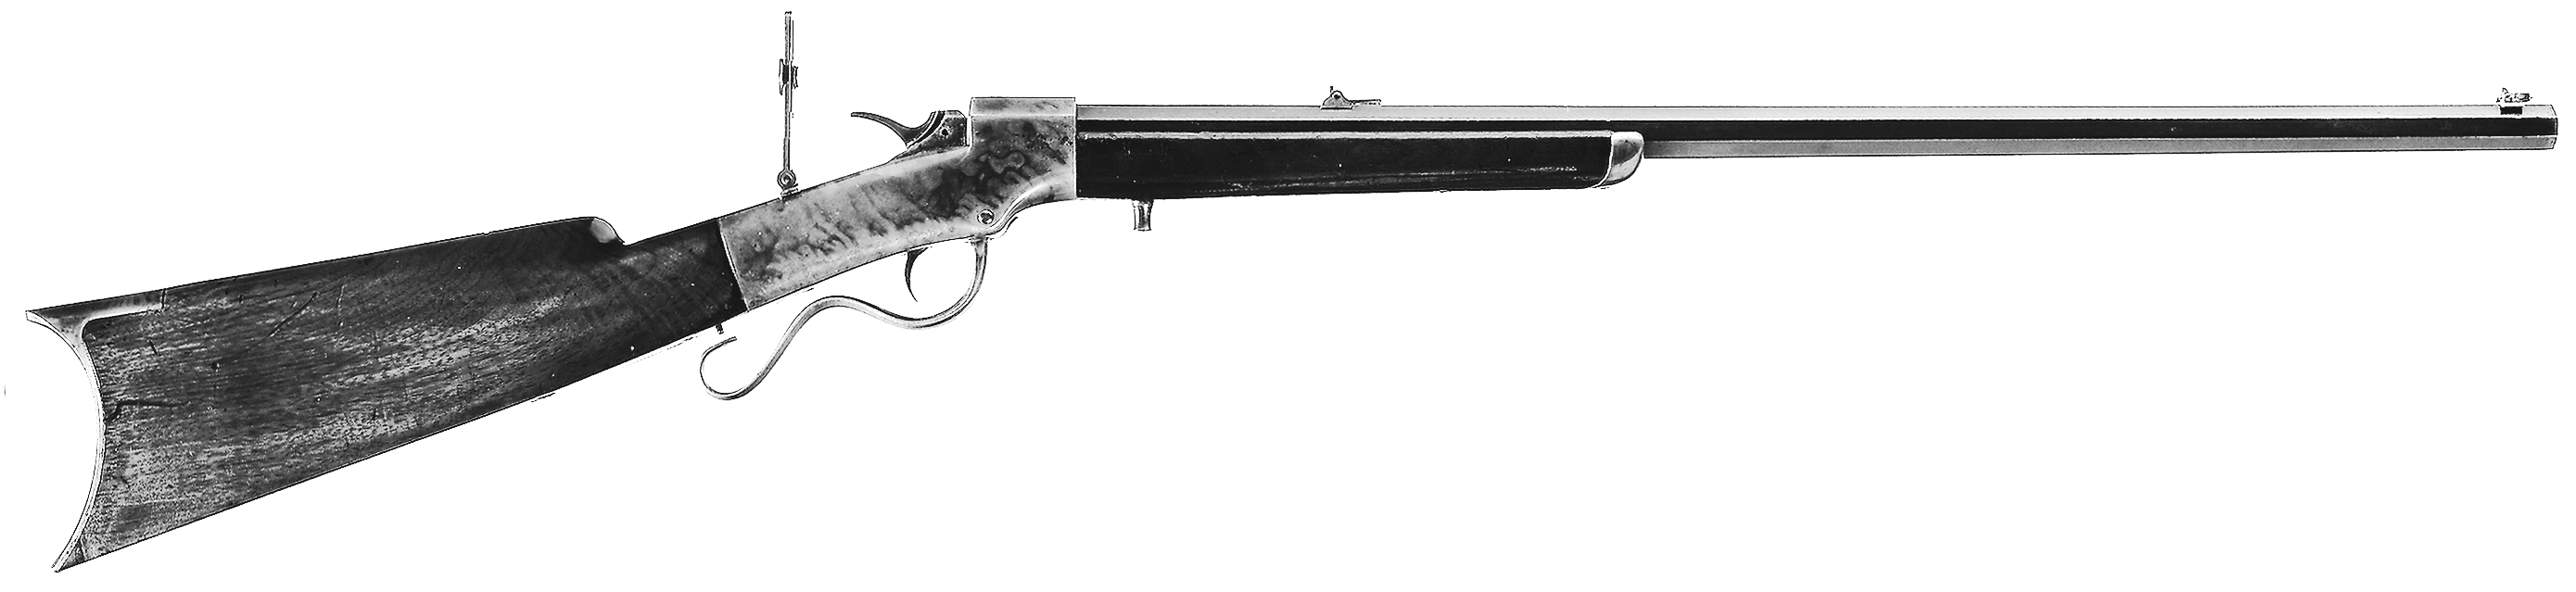 Ballard (R. Ball & Co.) Sporting Rifles